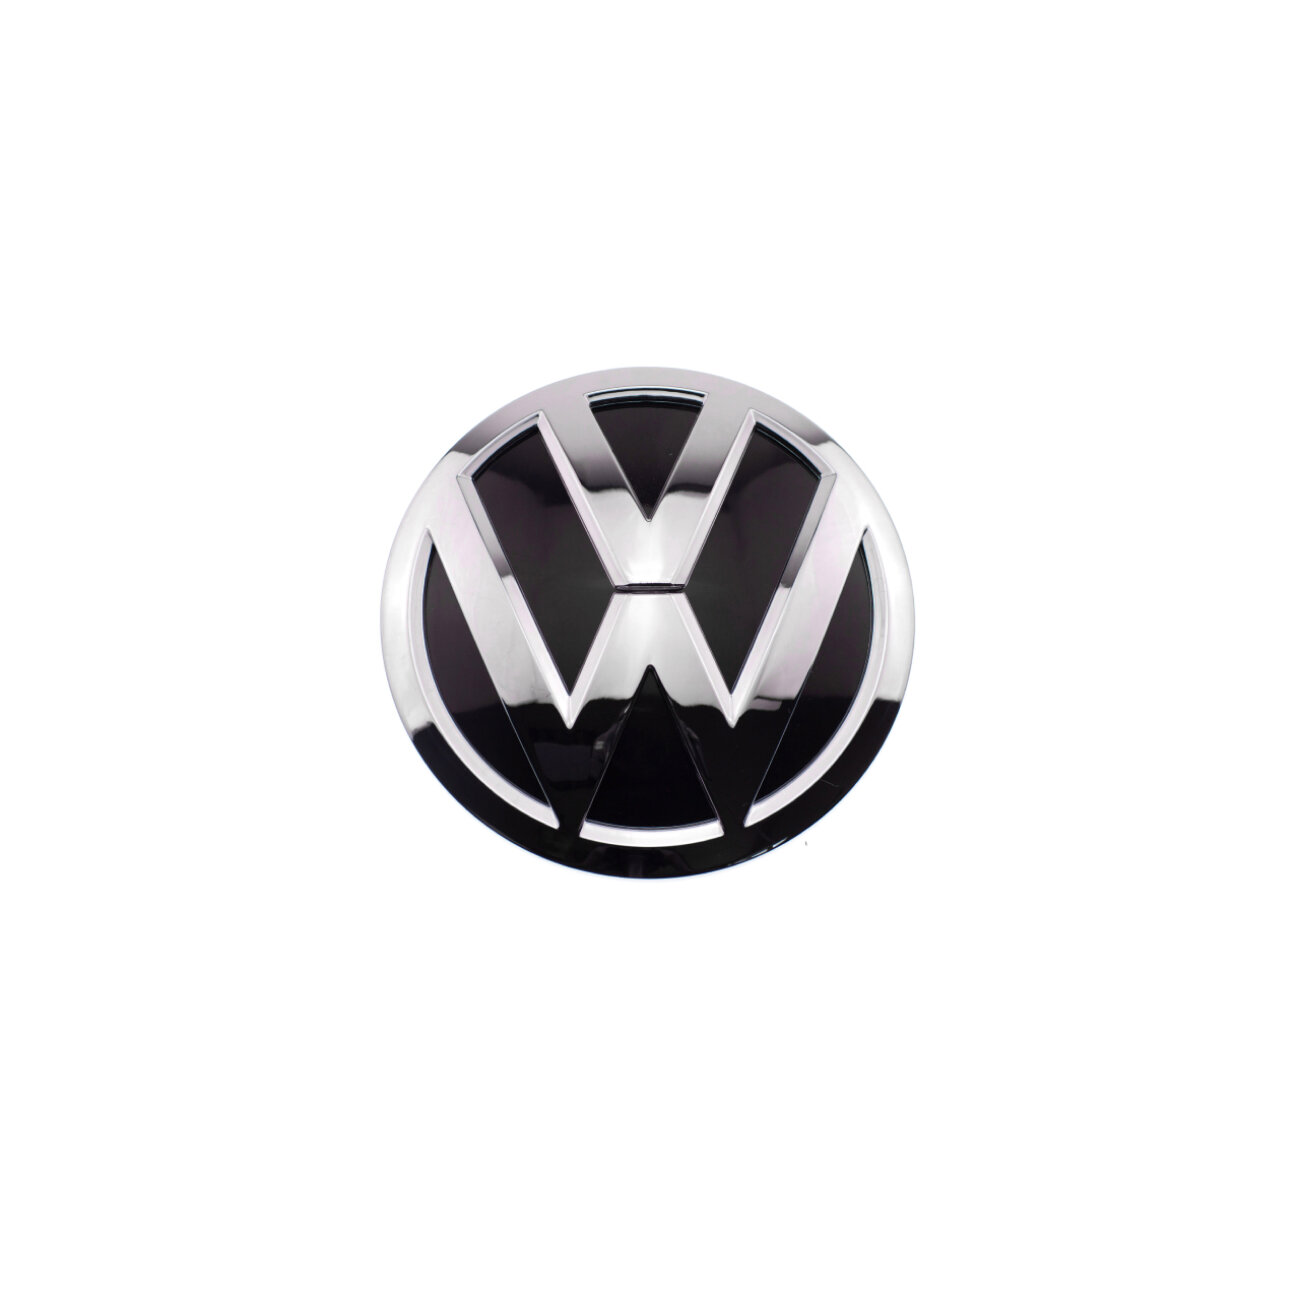 Эмблема на решётку для Volkswagen 2K5 853 600 хром П (016) 150мм.